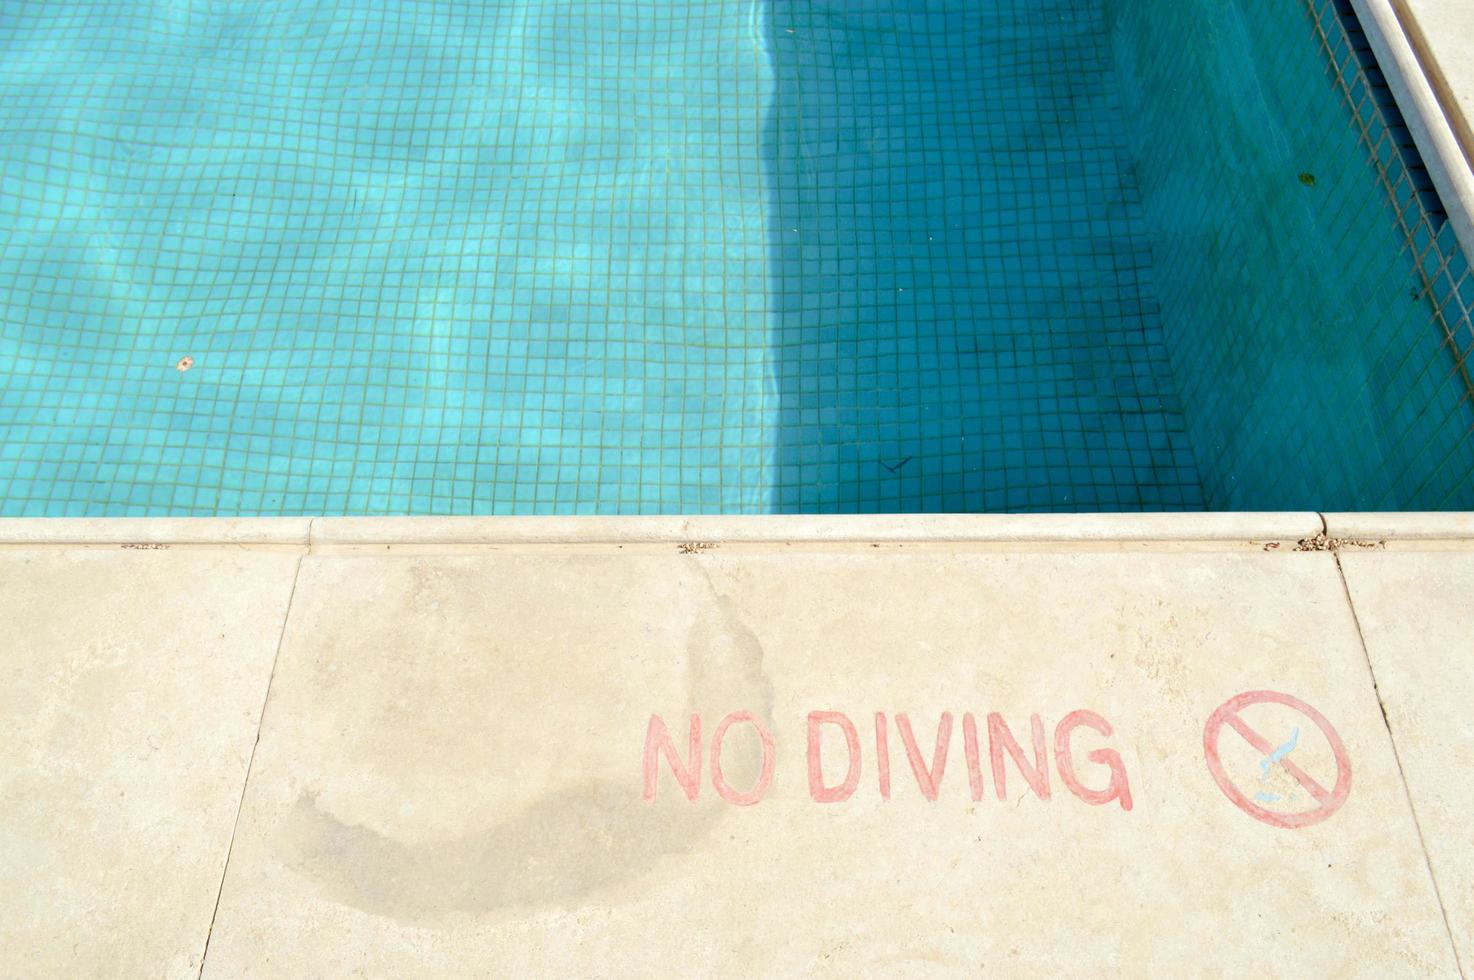 rote Farbaufschrift kein Tauchen aus Sicherheitsgründen auf dem Hintergrund des Pools in einem tropischen warmen Badeort und Kopierraum foto